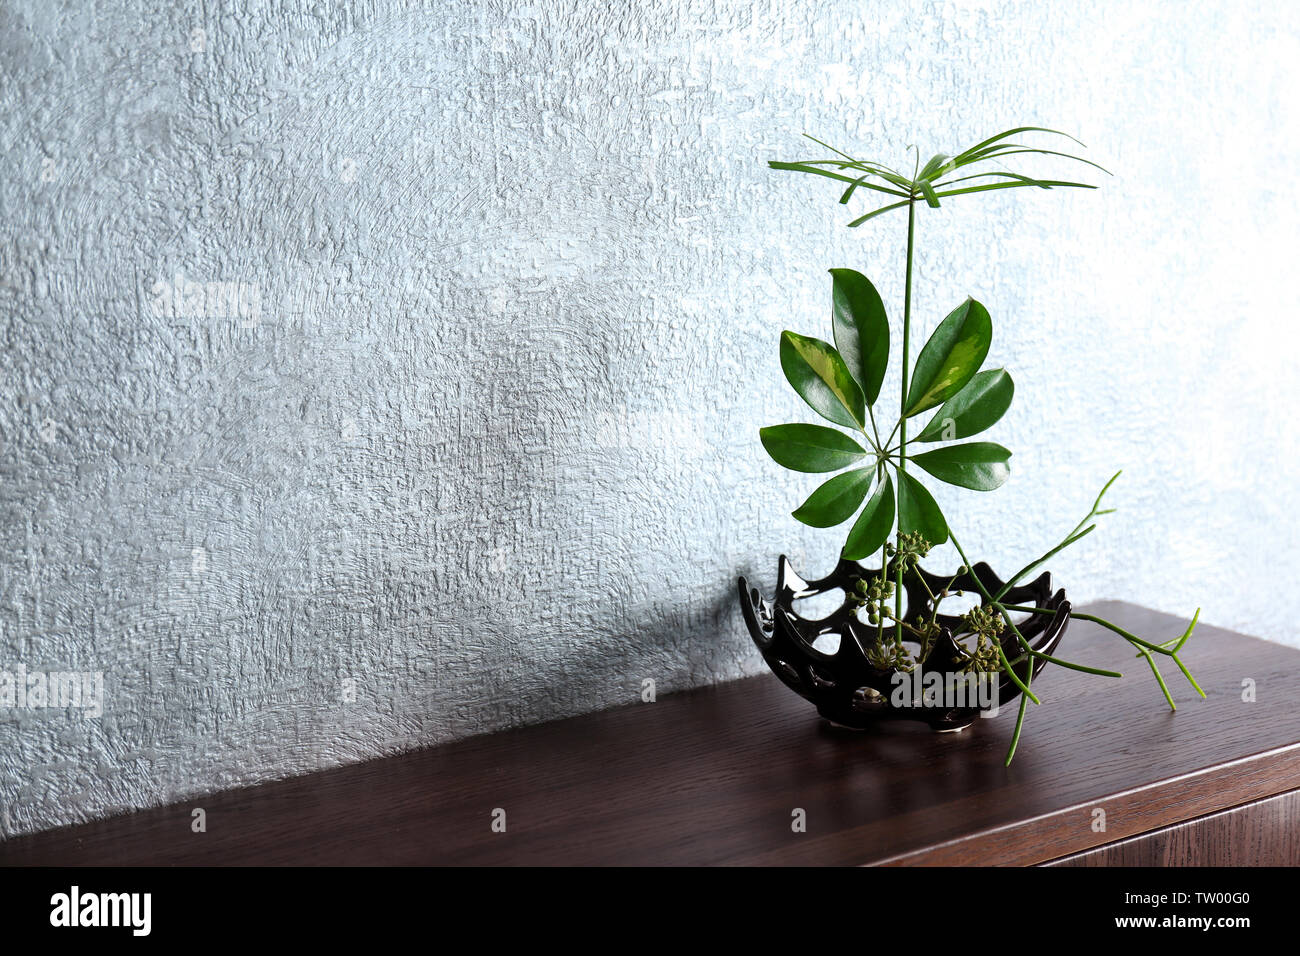 Plant arrangement on a color background Stock Photo